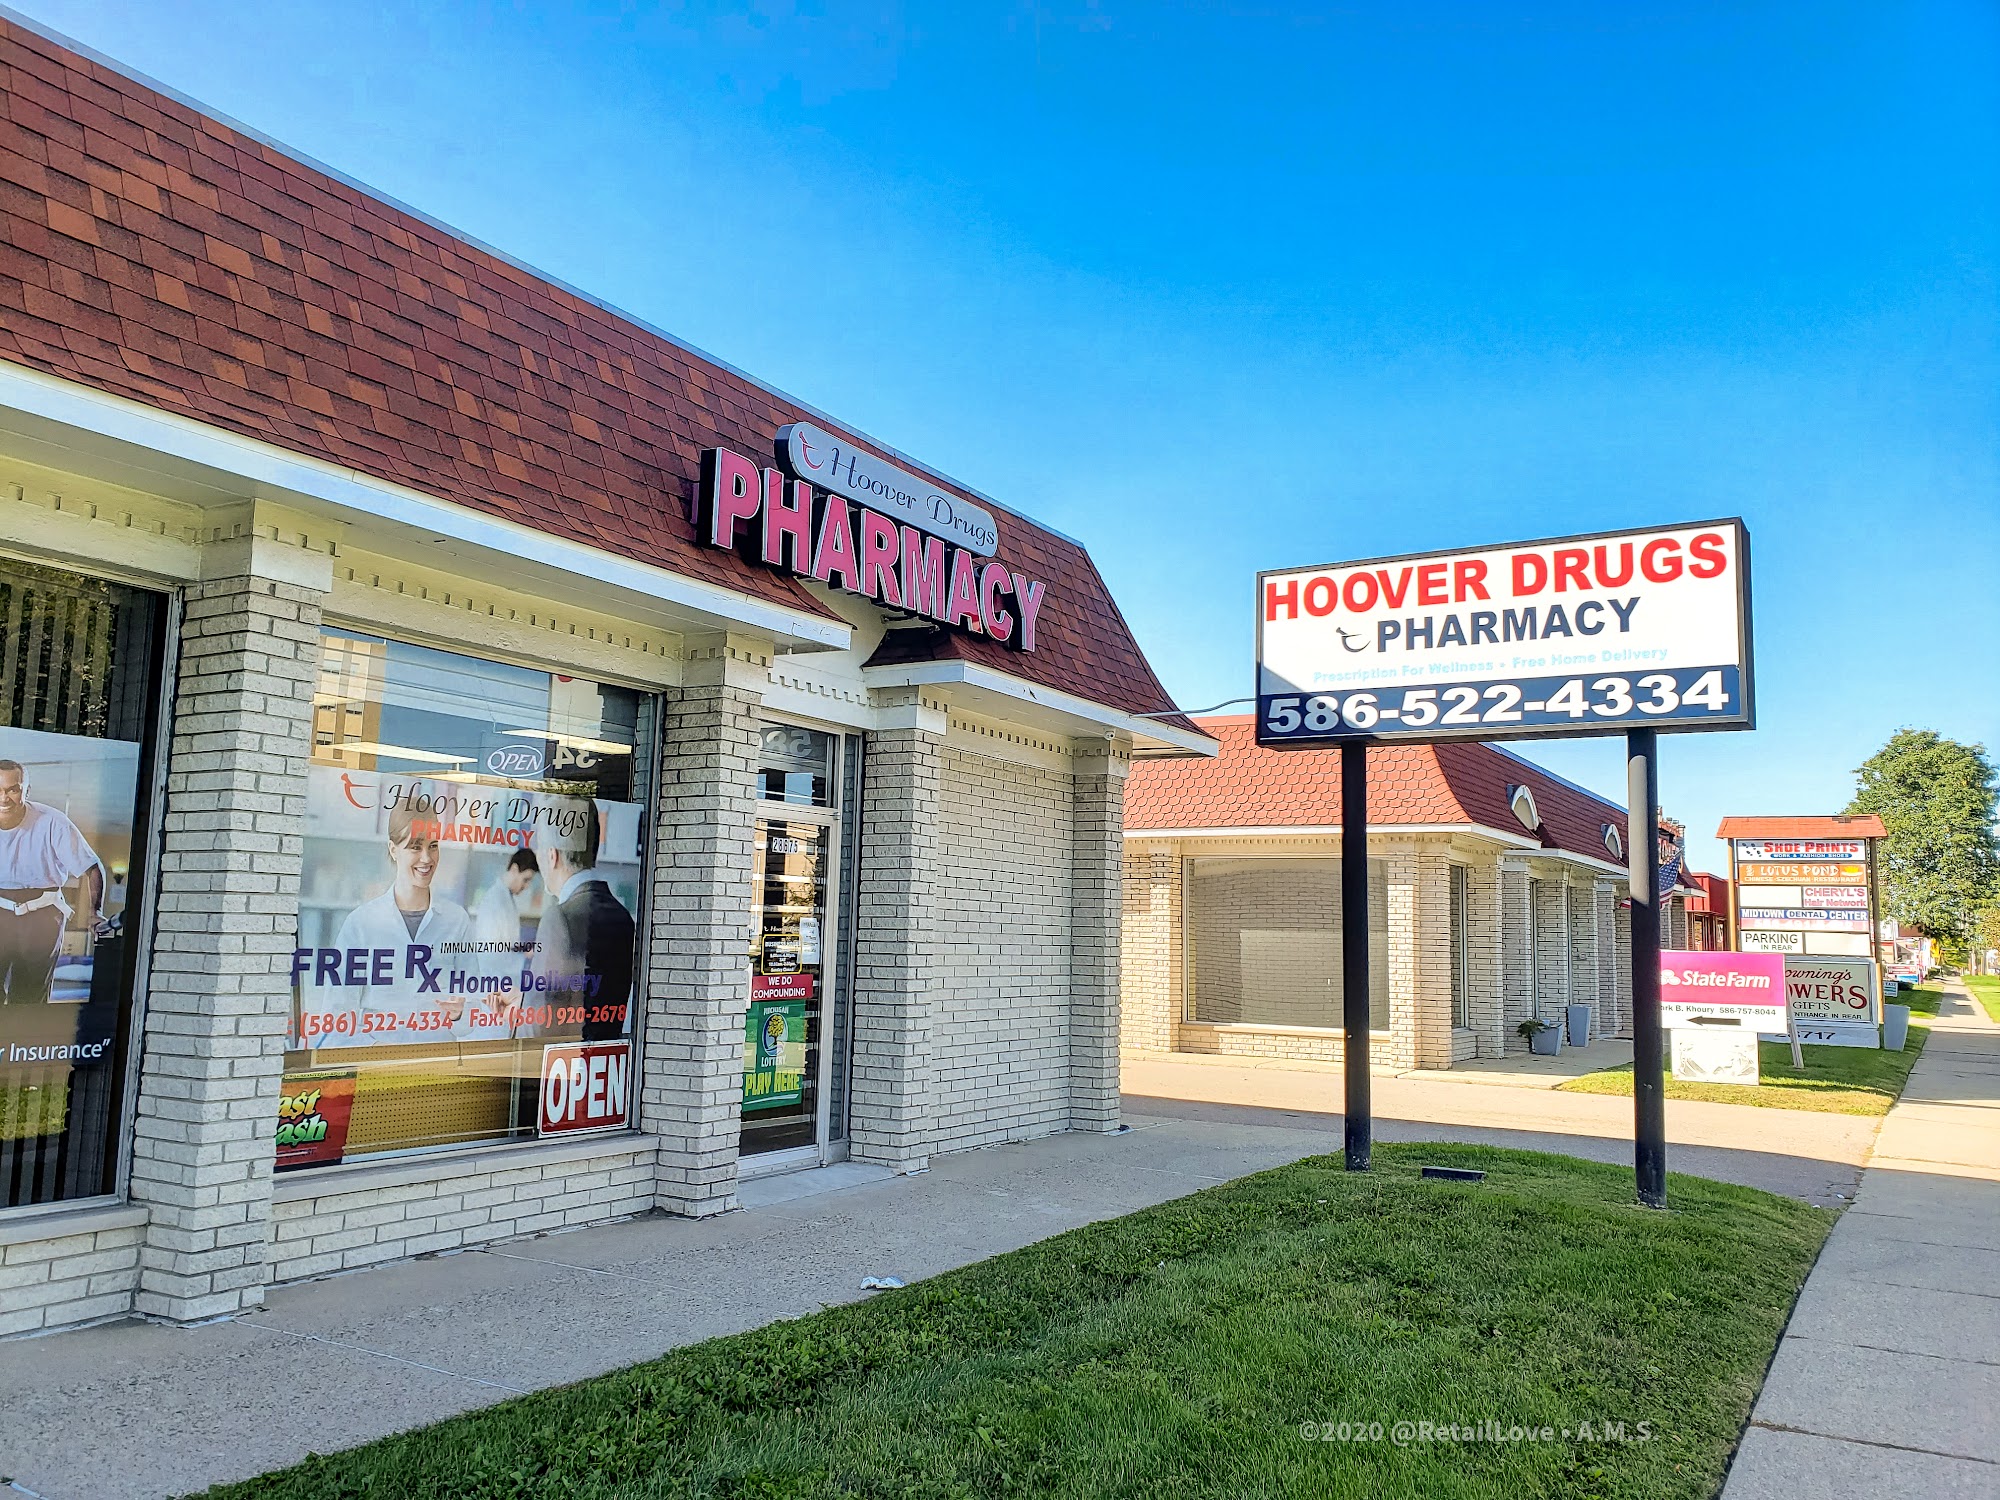 Hoover Drugs pharmacy